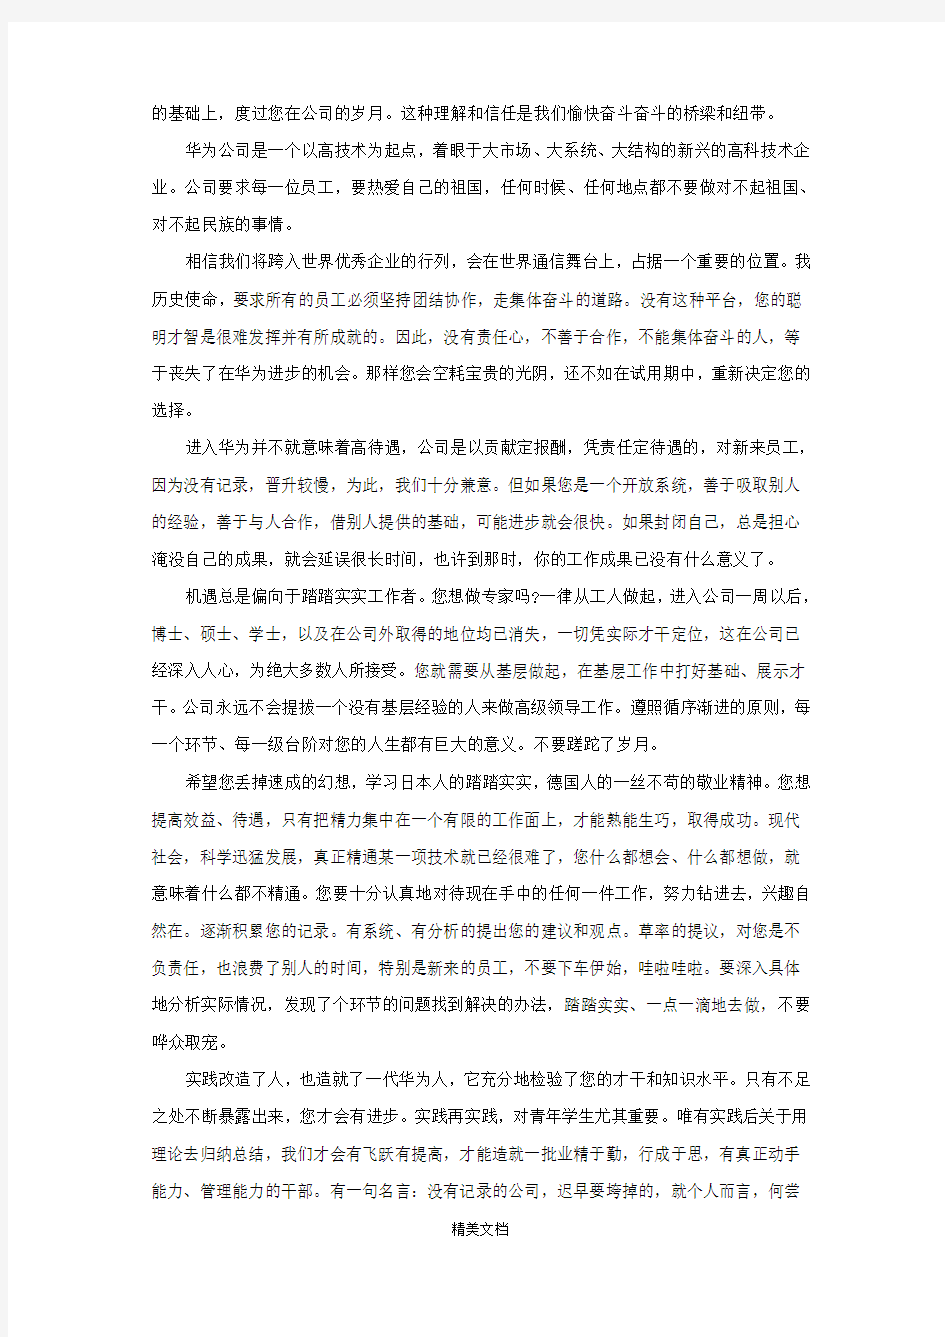 深圳市华为技术有限公司人事管理制度